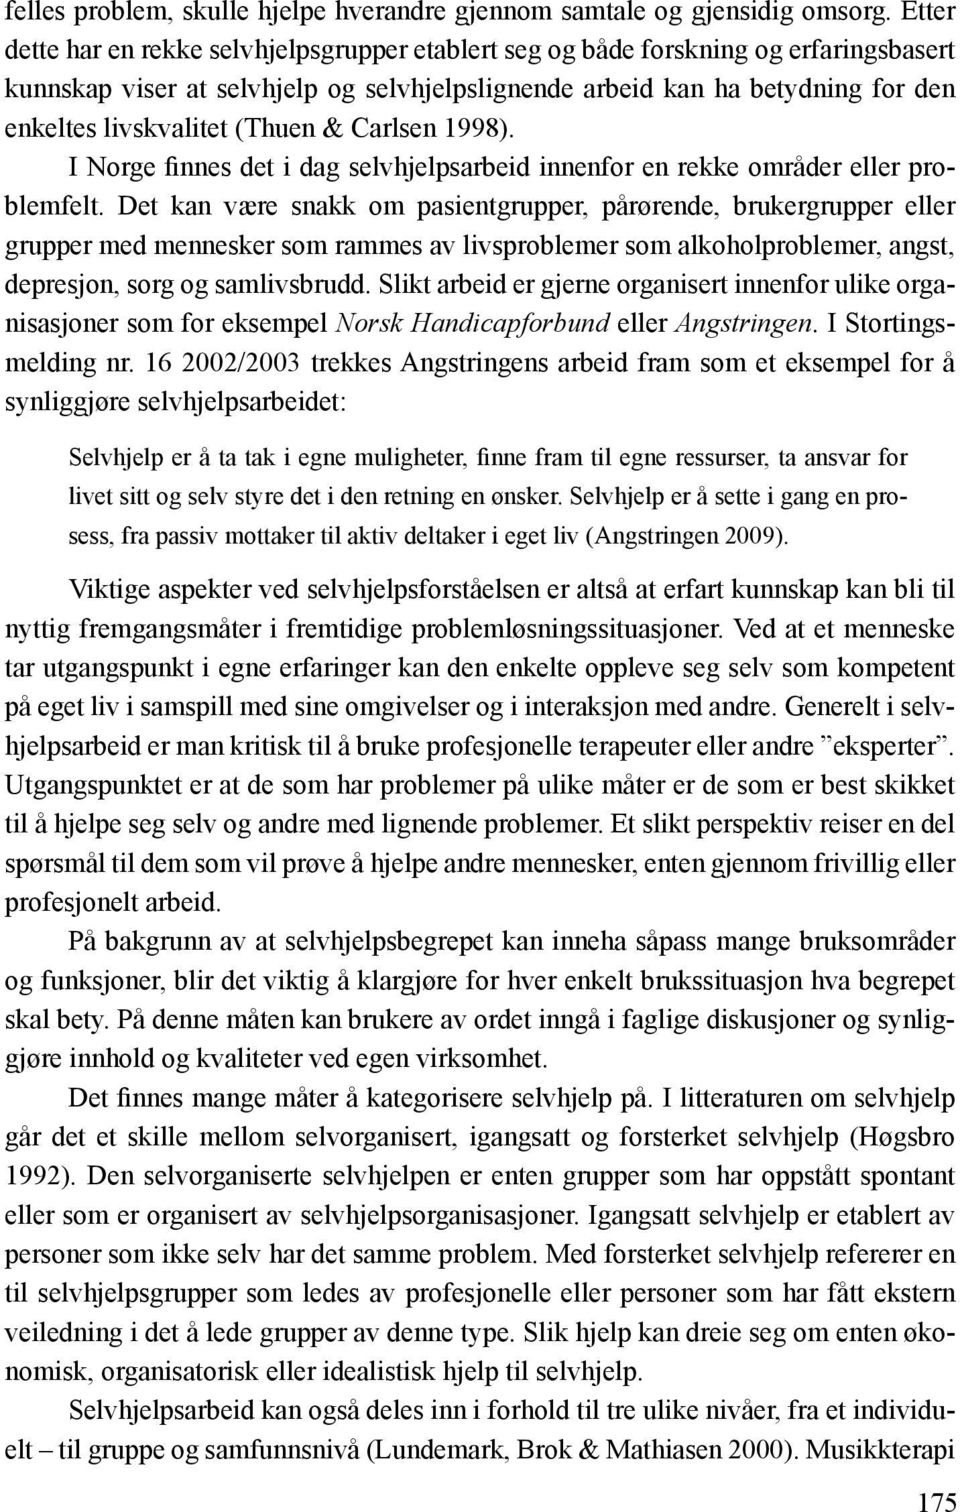 (Thuen & Carlsen 1998). I Norge finnes det i dag selvhjelpsarbeid innenfor en rekke områder eller problemfelt.